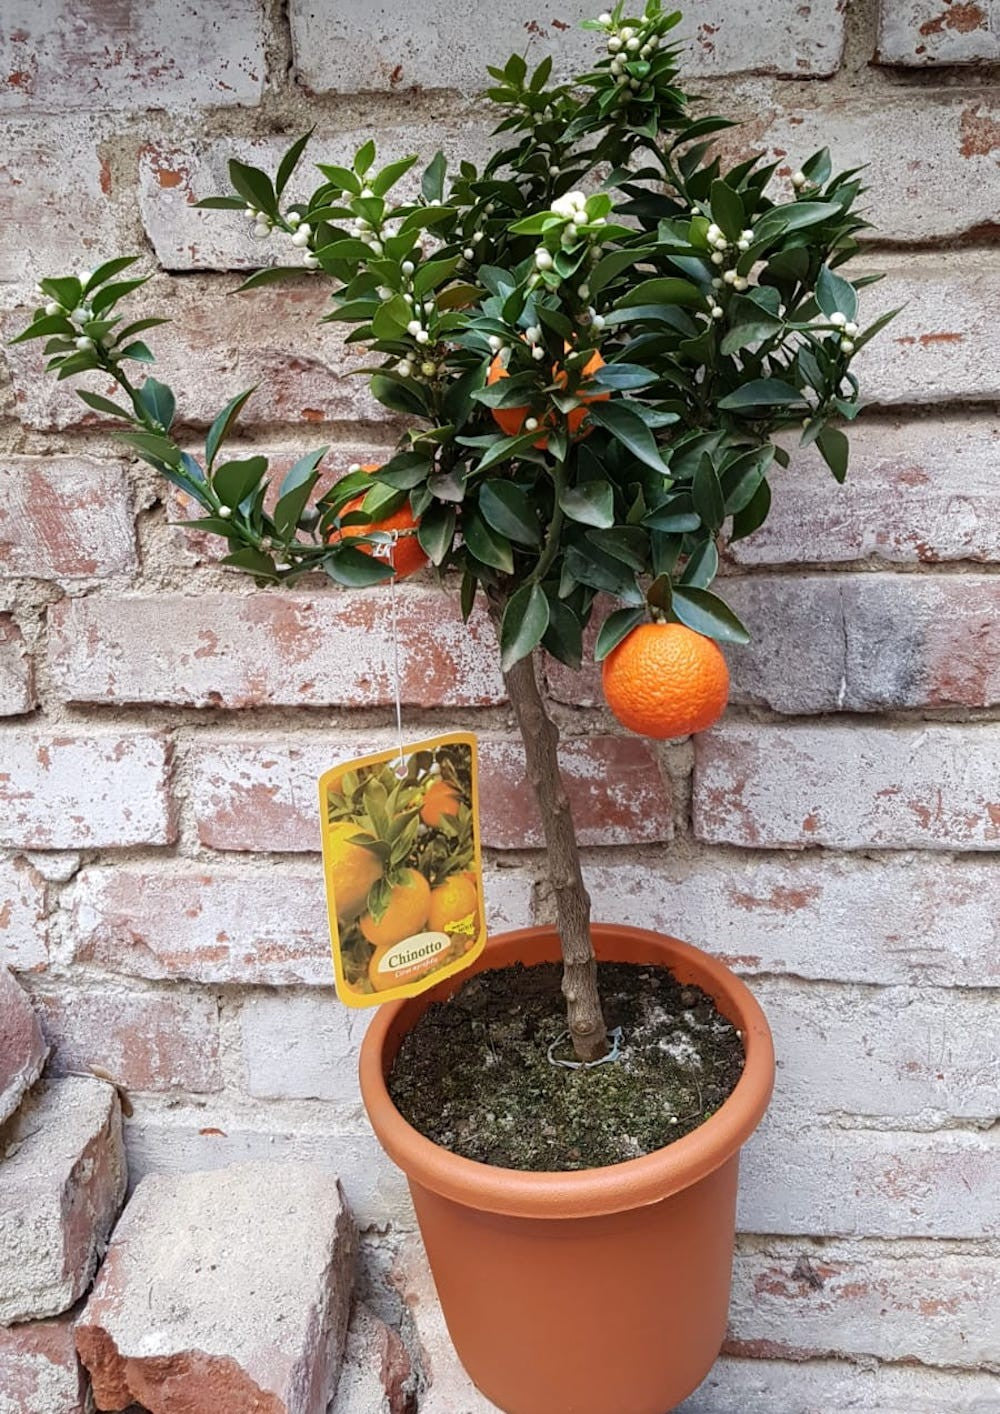 Citrus aurantium var. Myrtifolia - Chinotto